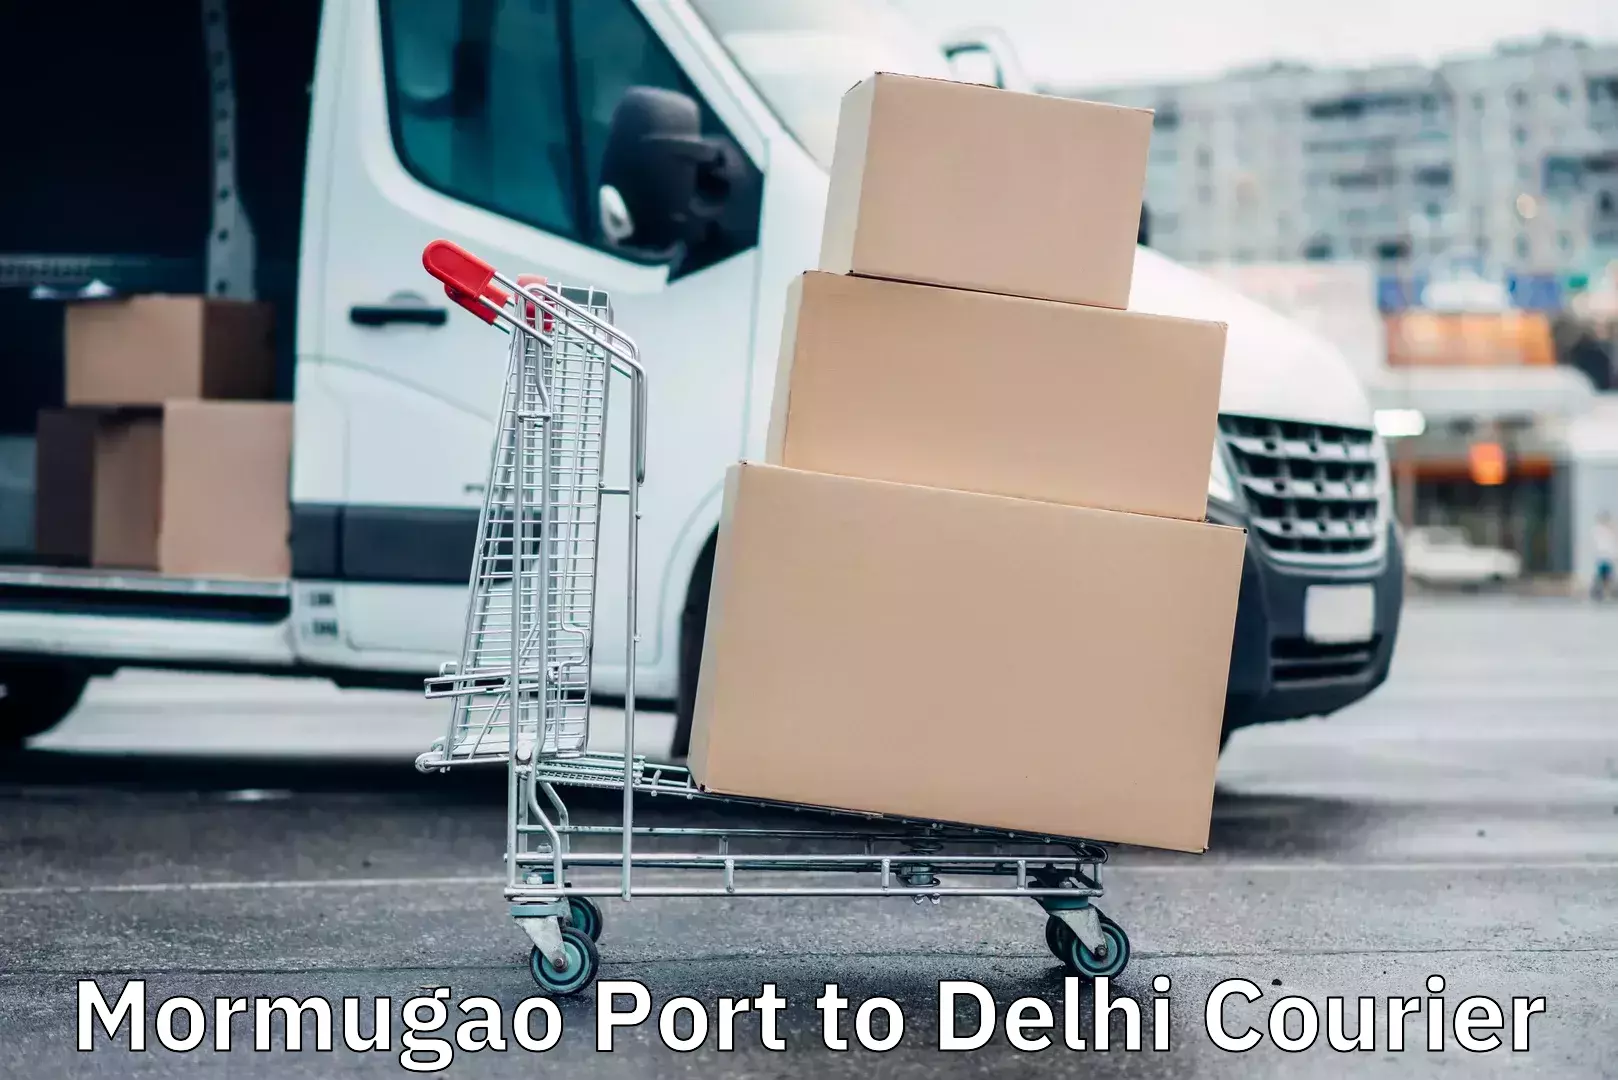 Urban courier service in Mormugao Port to Delhi